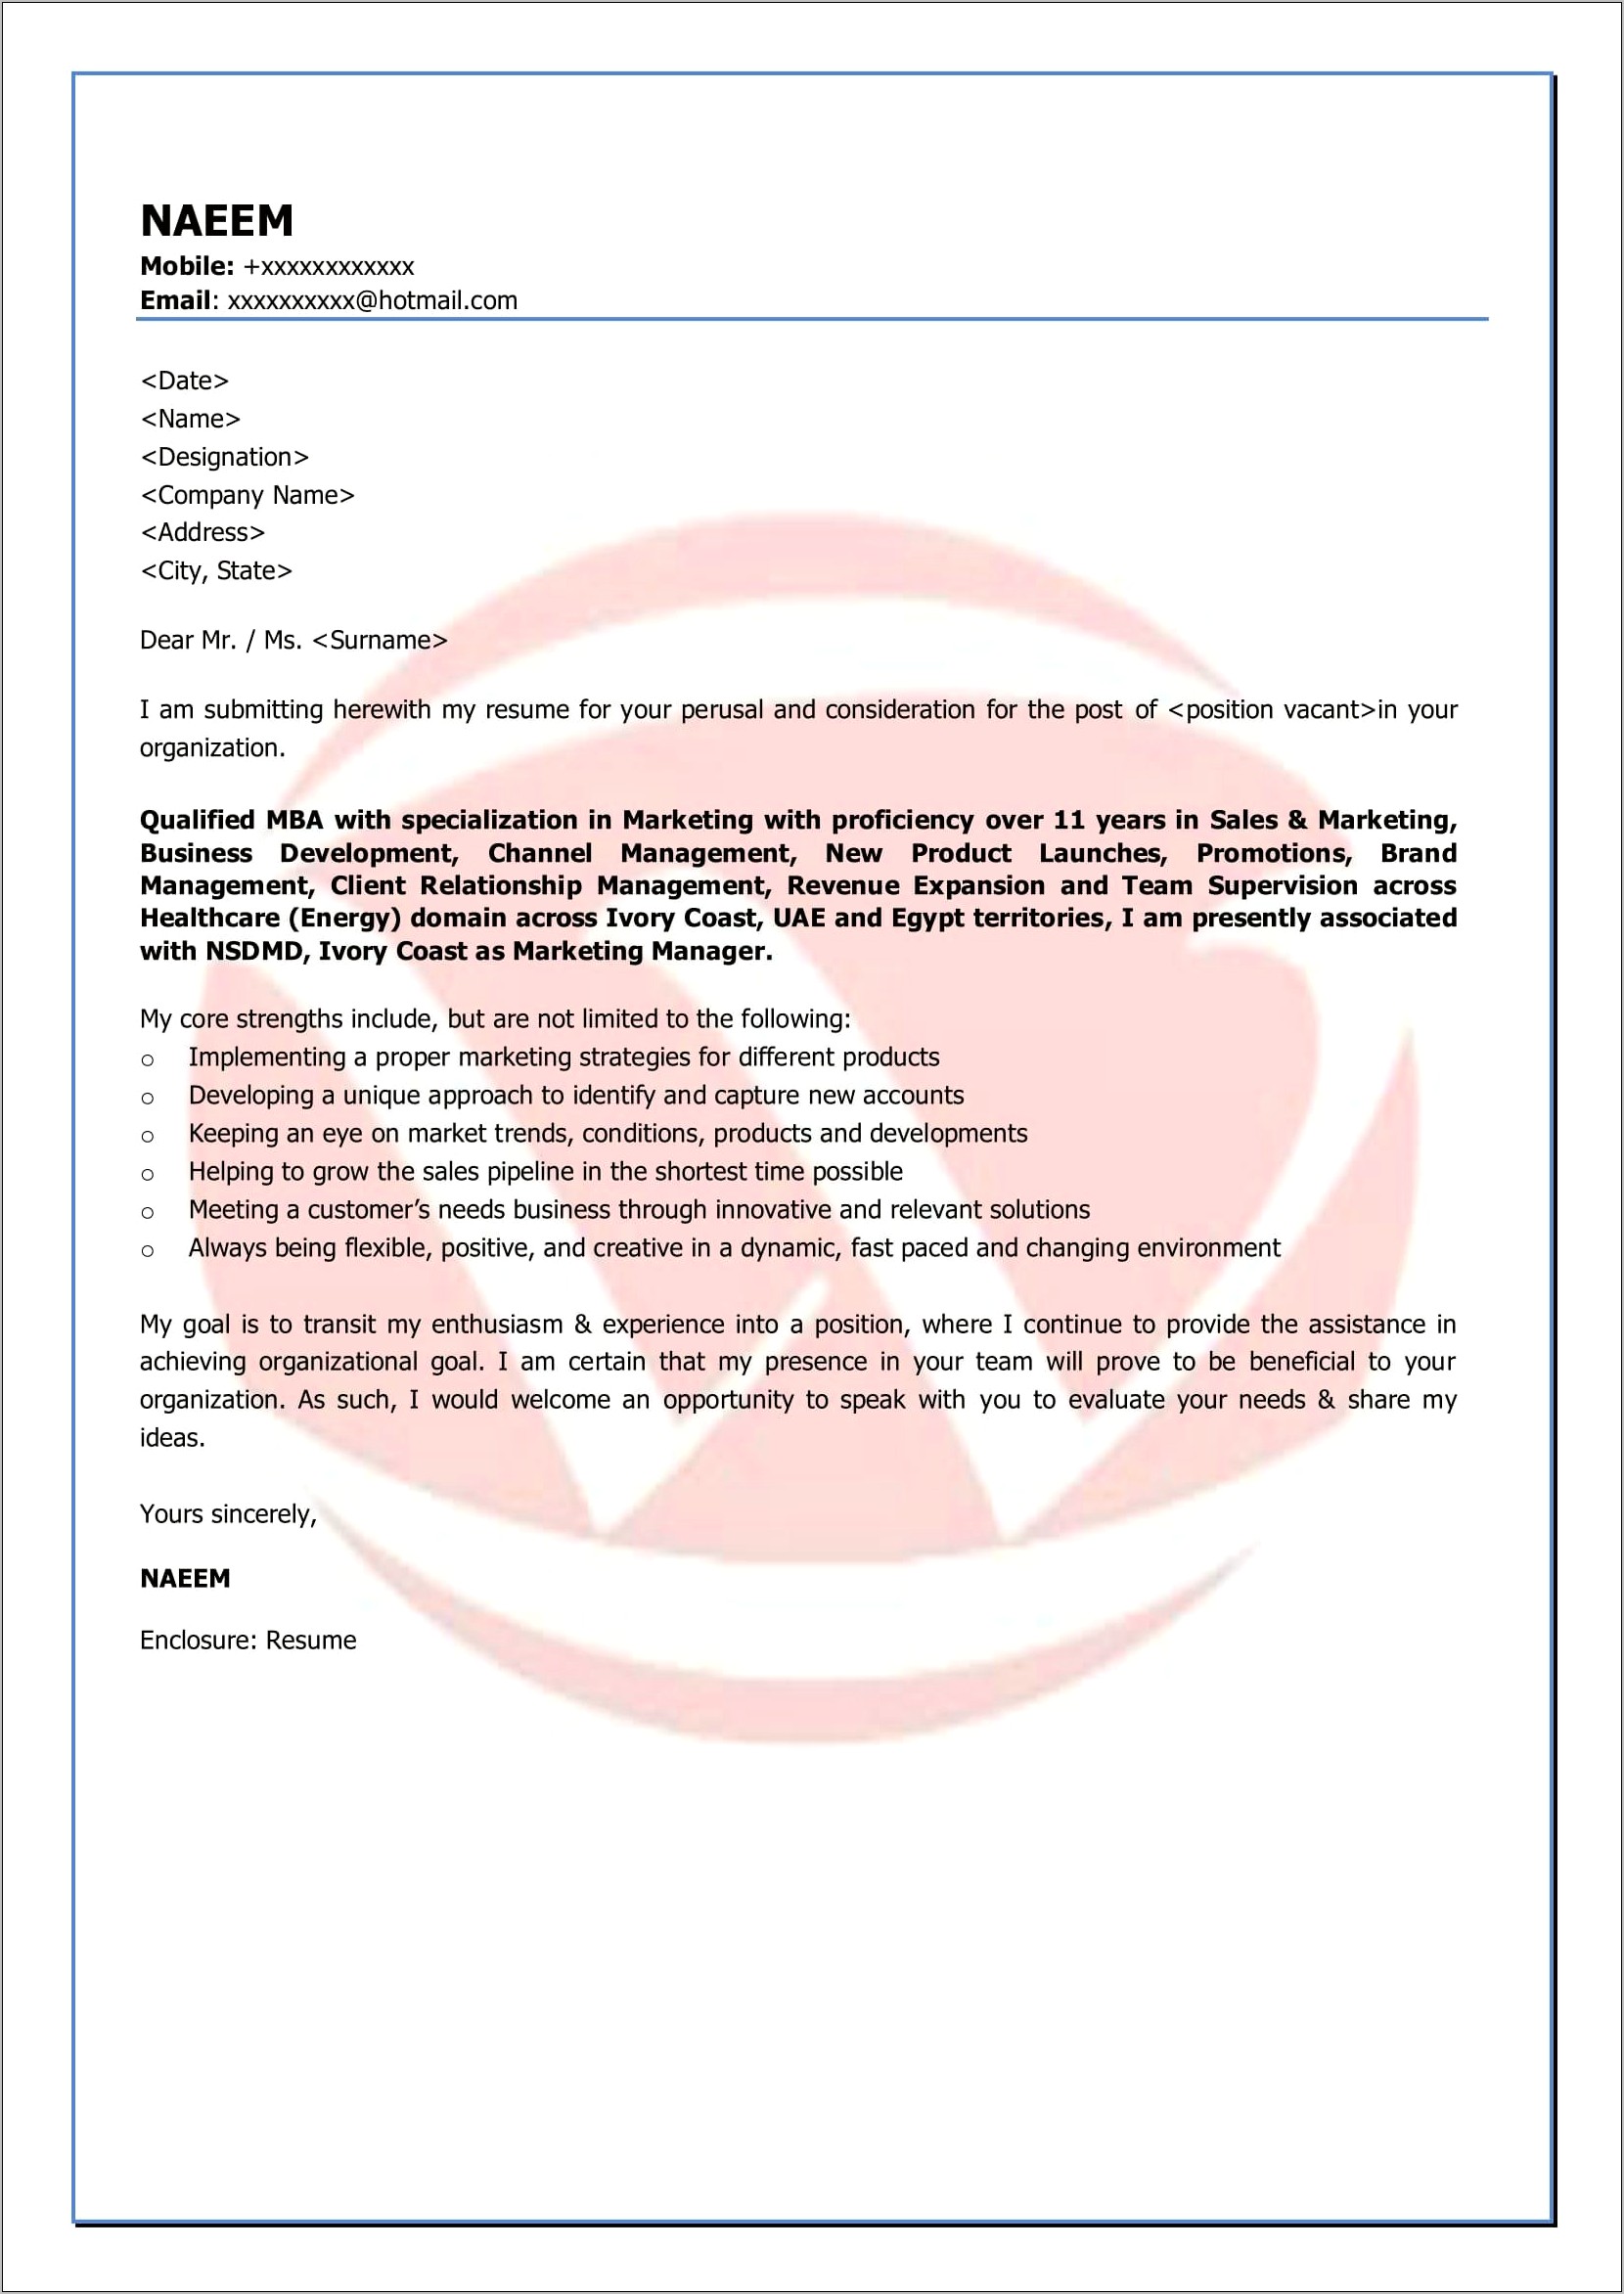 Resume Marketing Cover Letter Samples